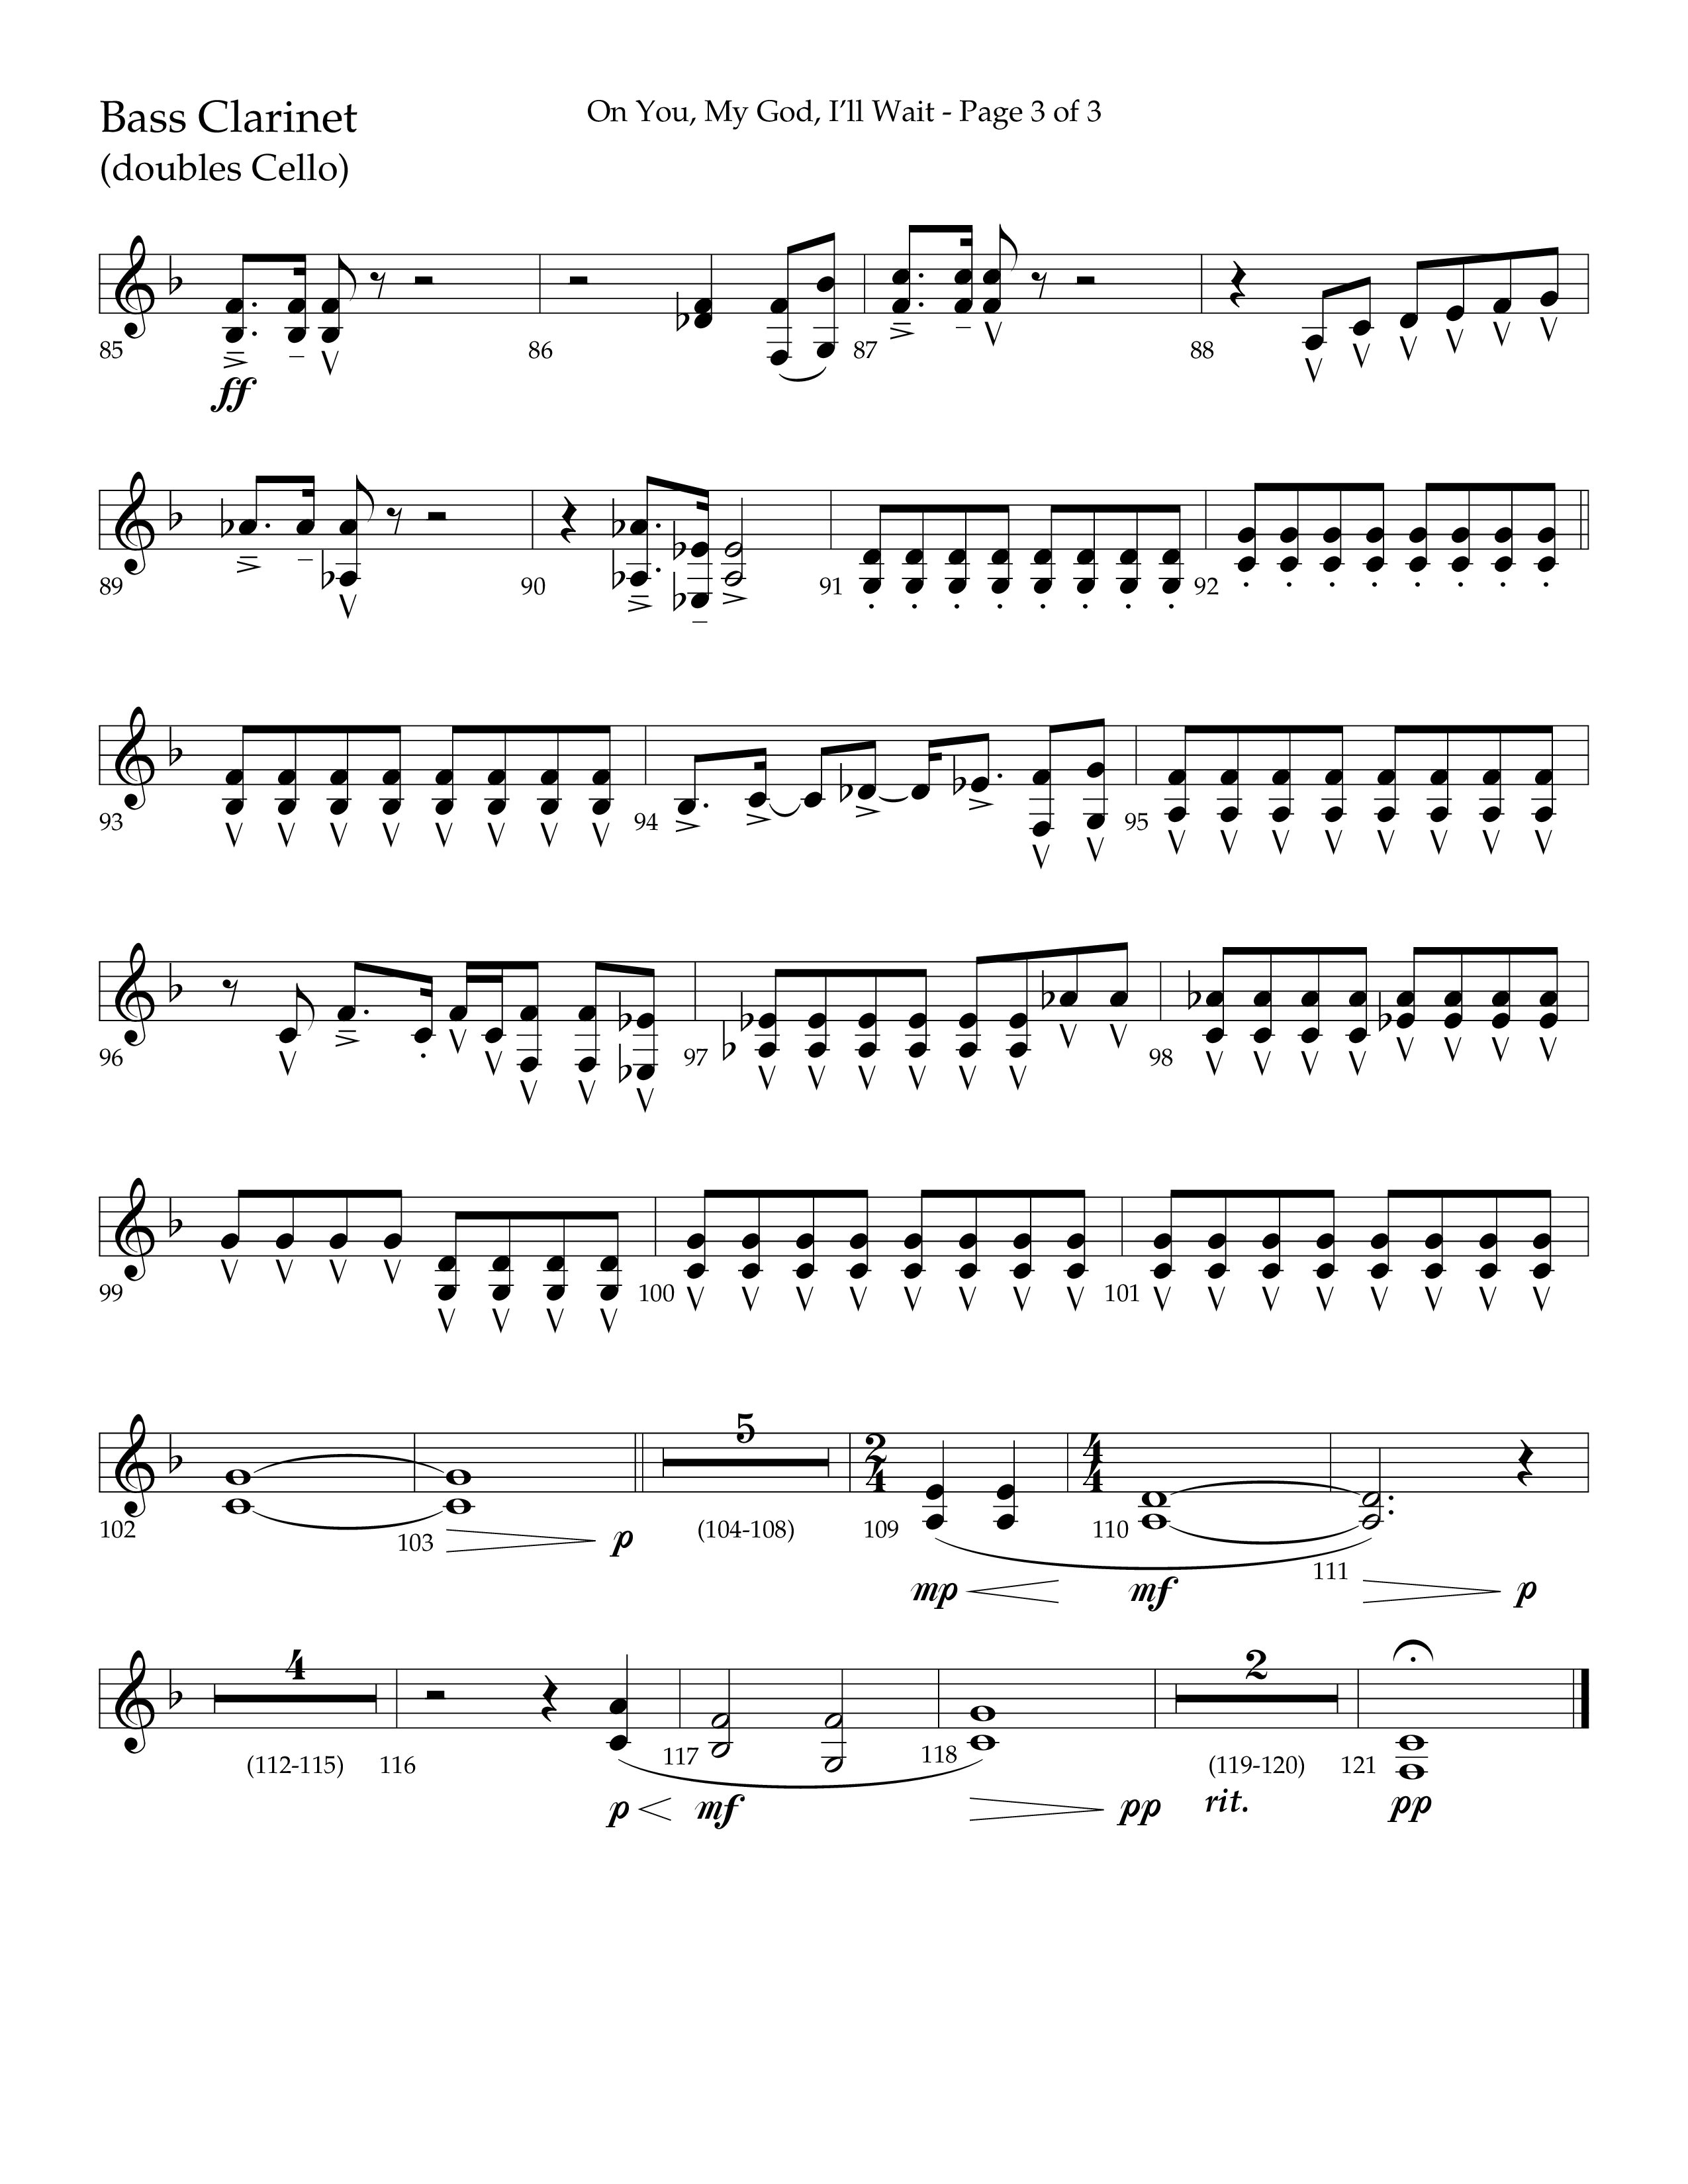 On You My God I'll Wait (Choral Anthem SATB) Bass Clarinet (Lifeway Choral / Arr. Craig Adams / Arr. Mike Harland)